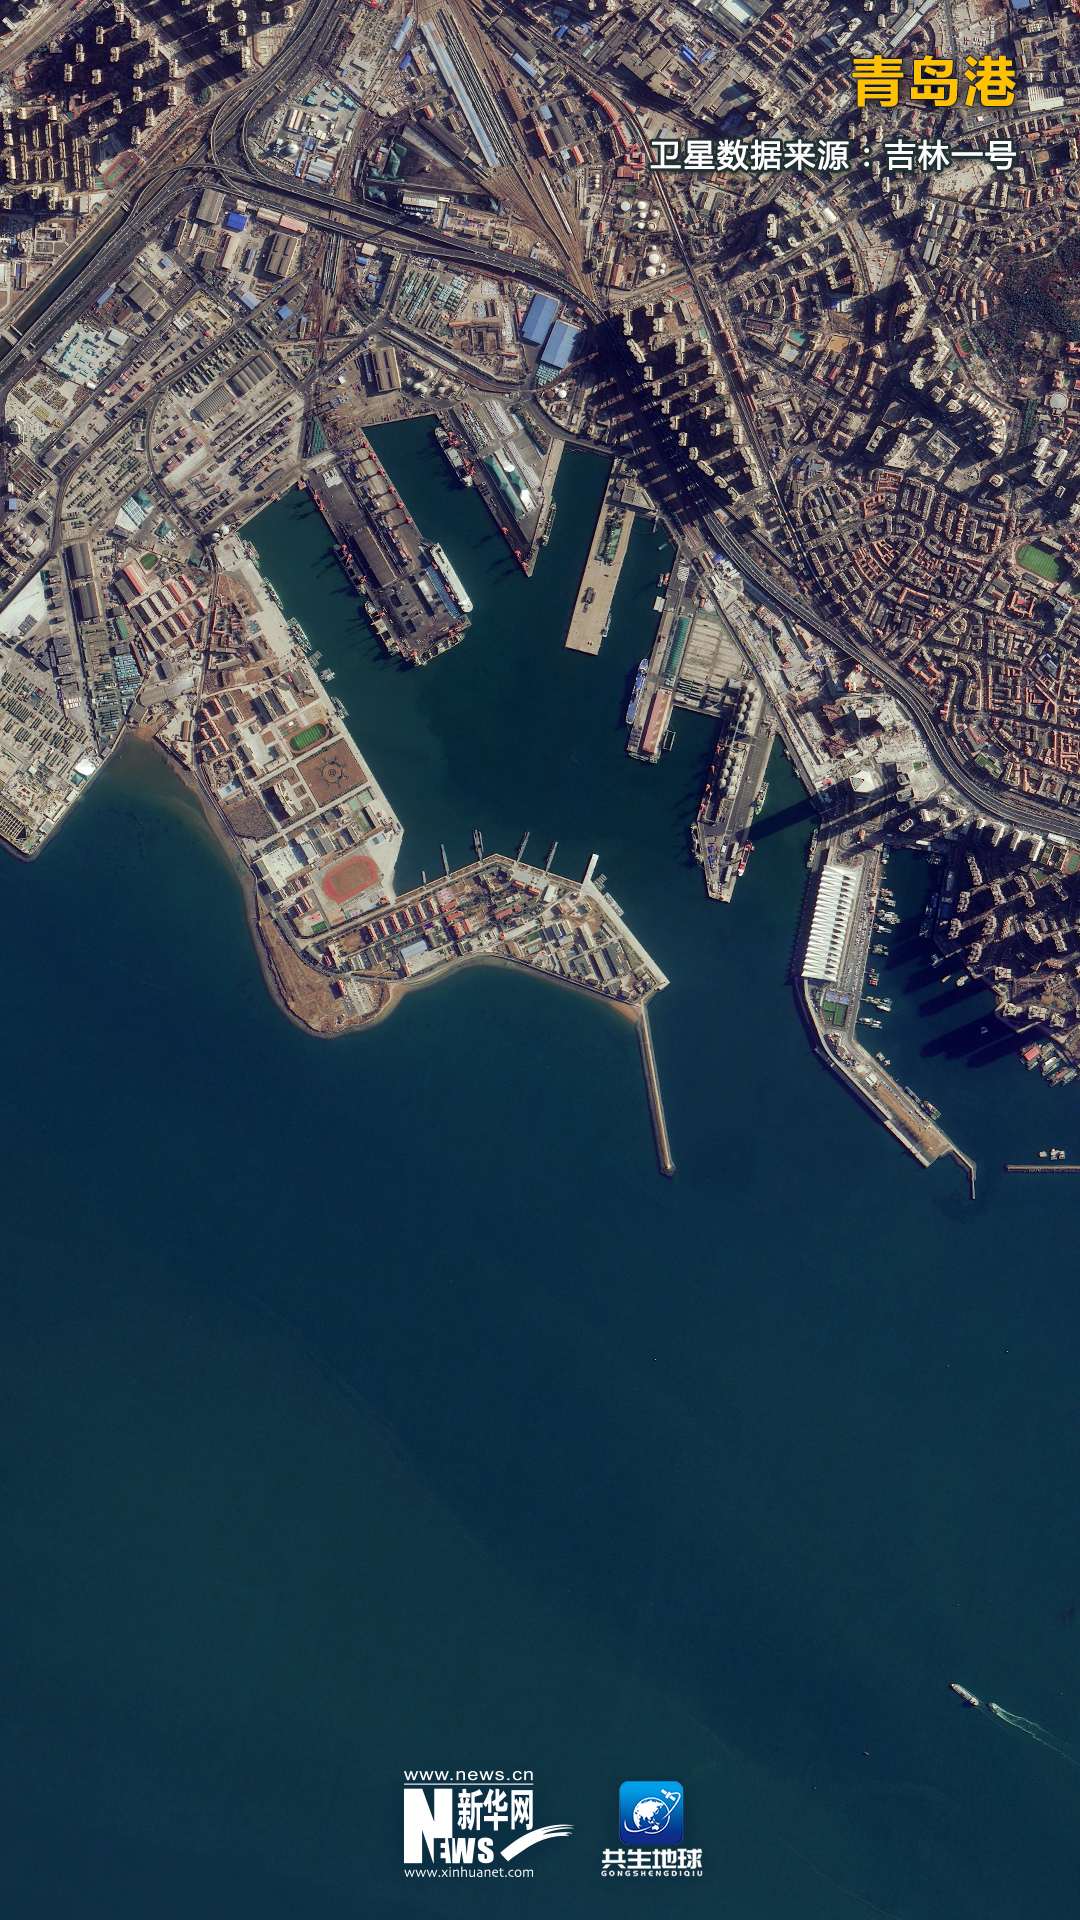 卫星“瞰”奋进中国里的忙碌港口